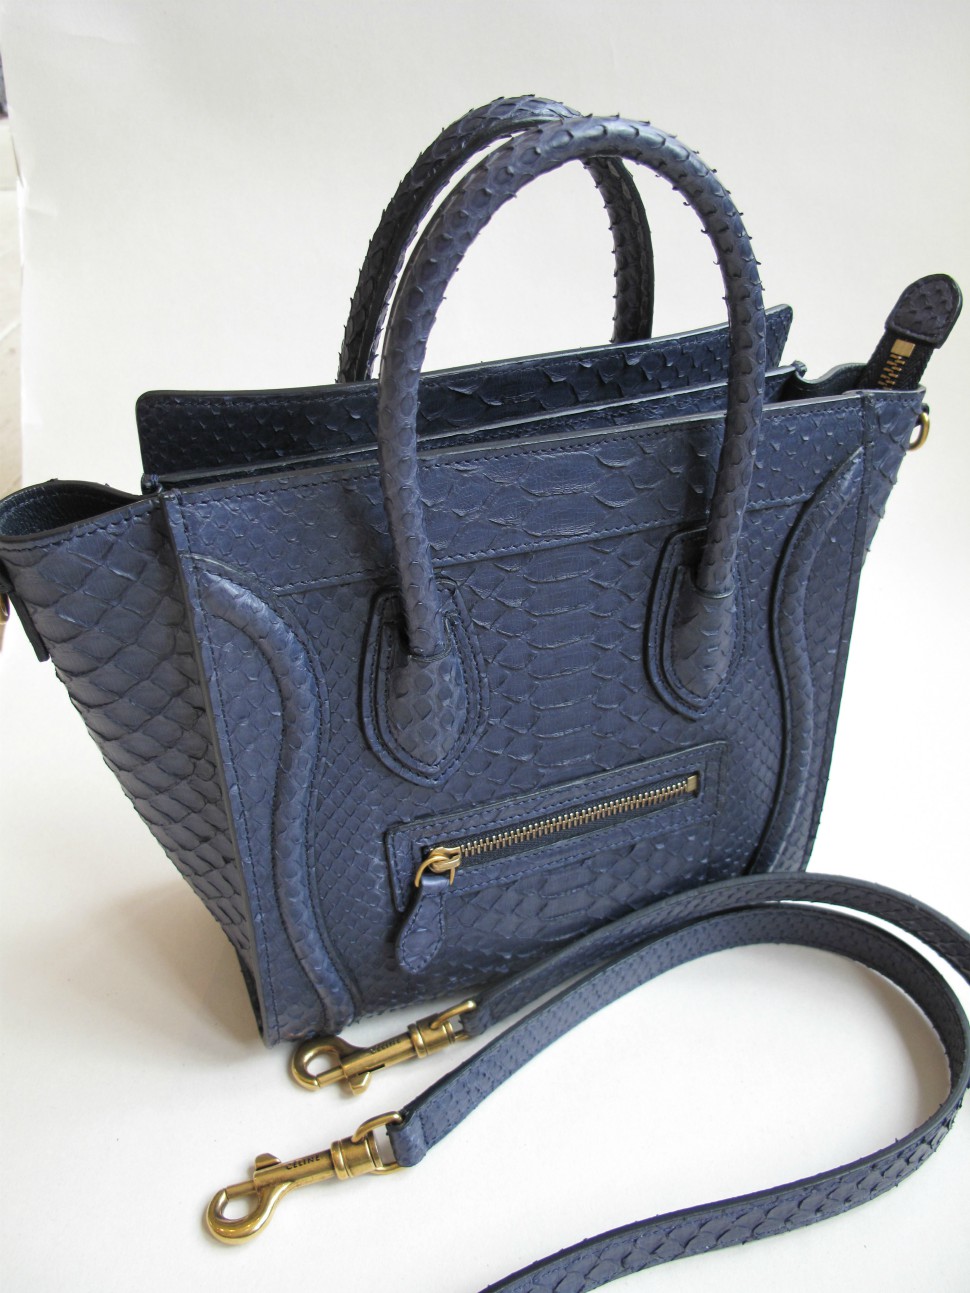 Celine handbag | Celine handbags, Celine, Celine outlet